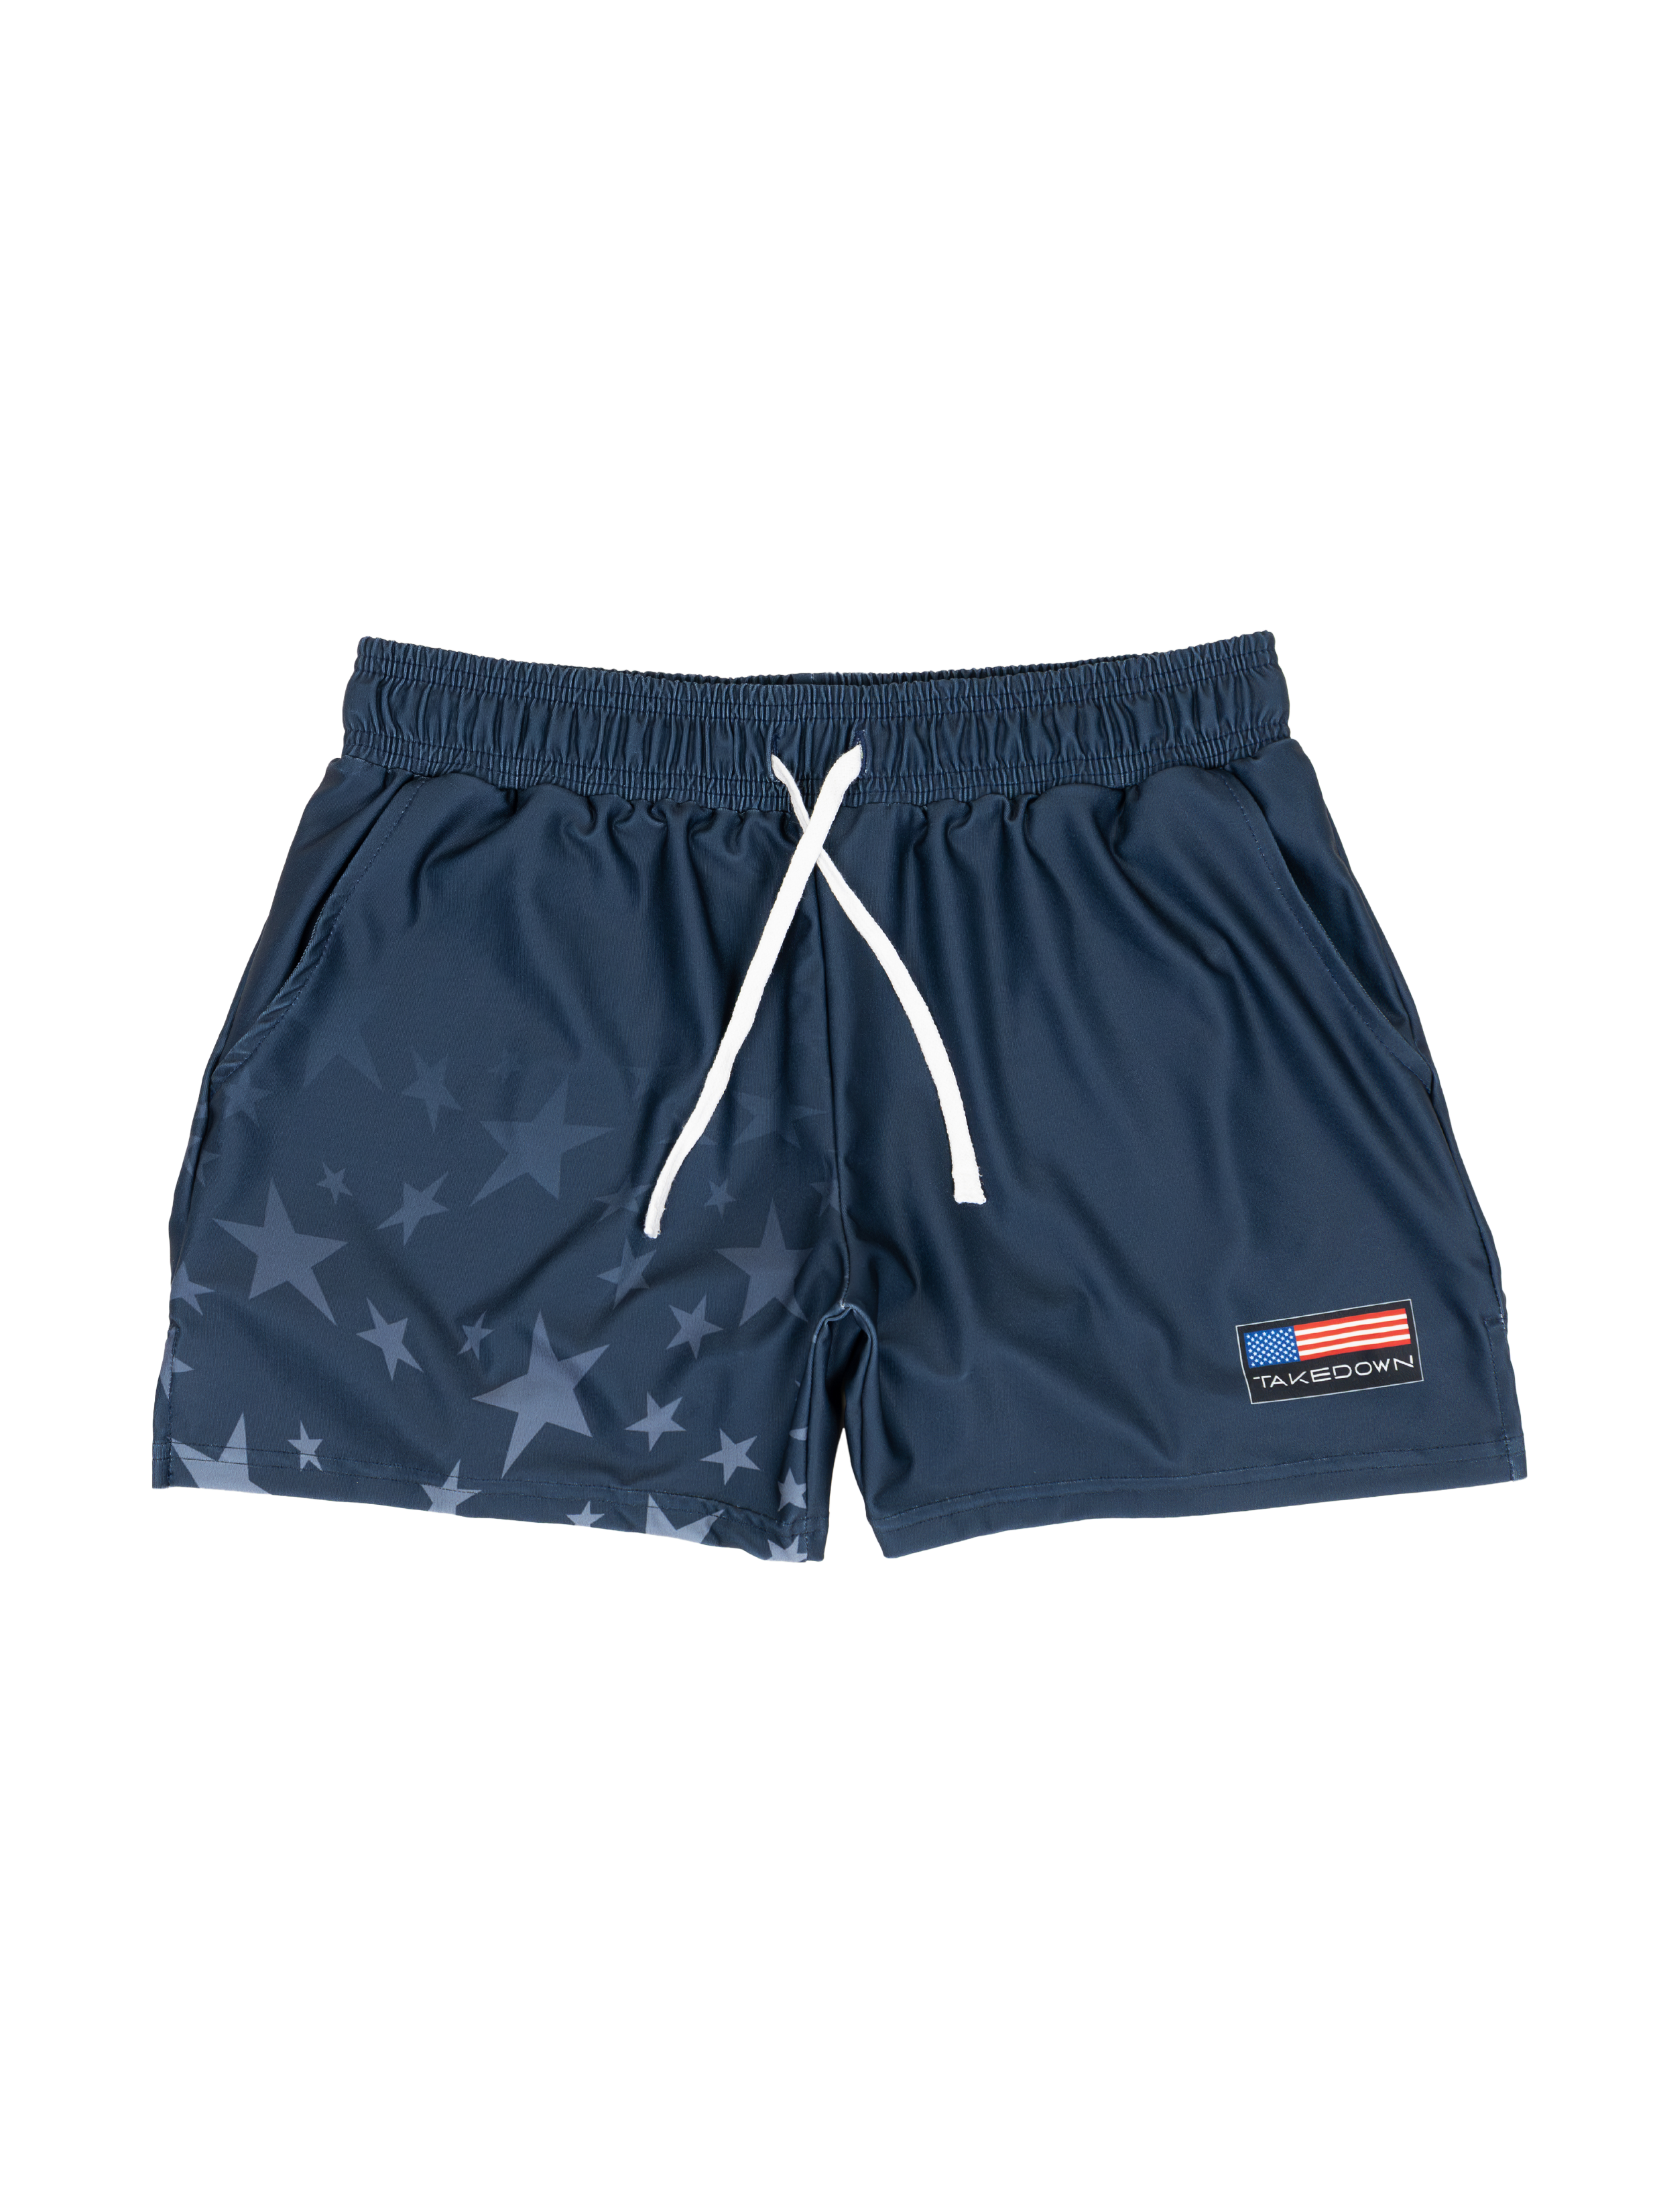 Gym Star Gym Shorts - Navy (5